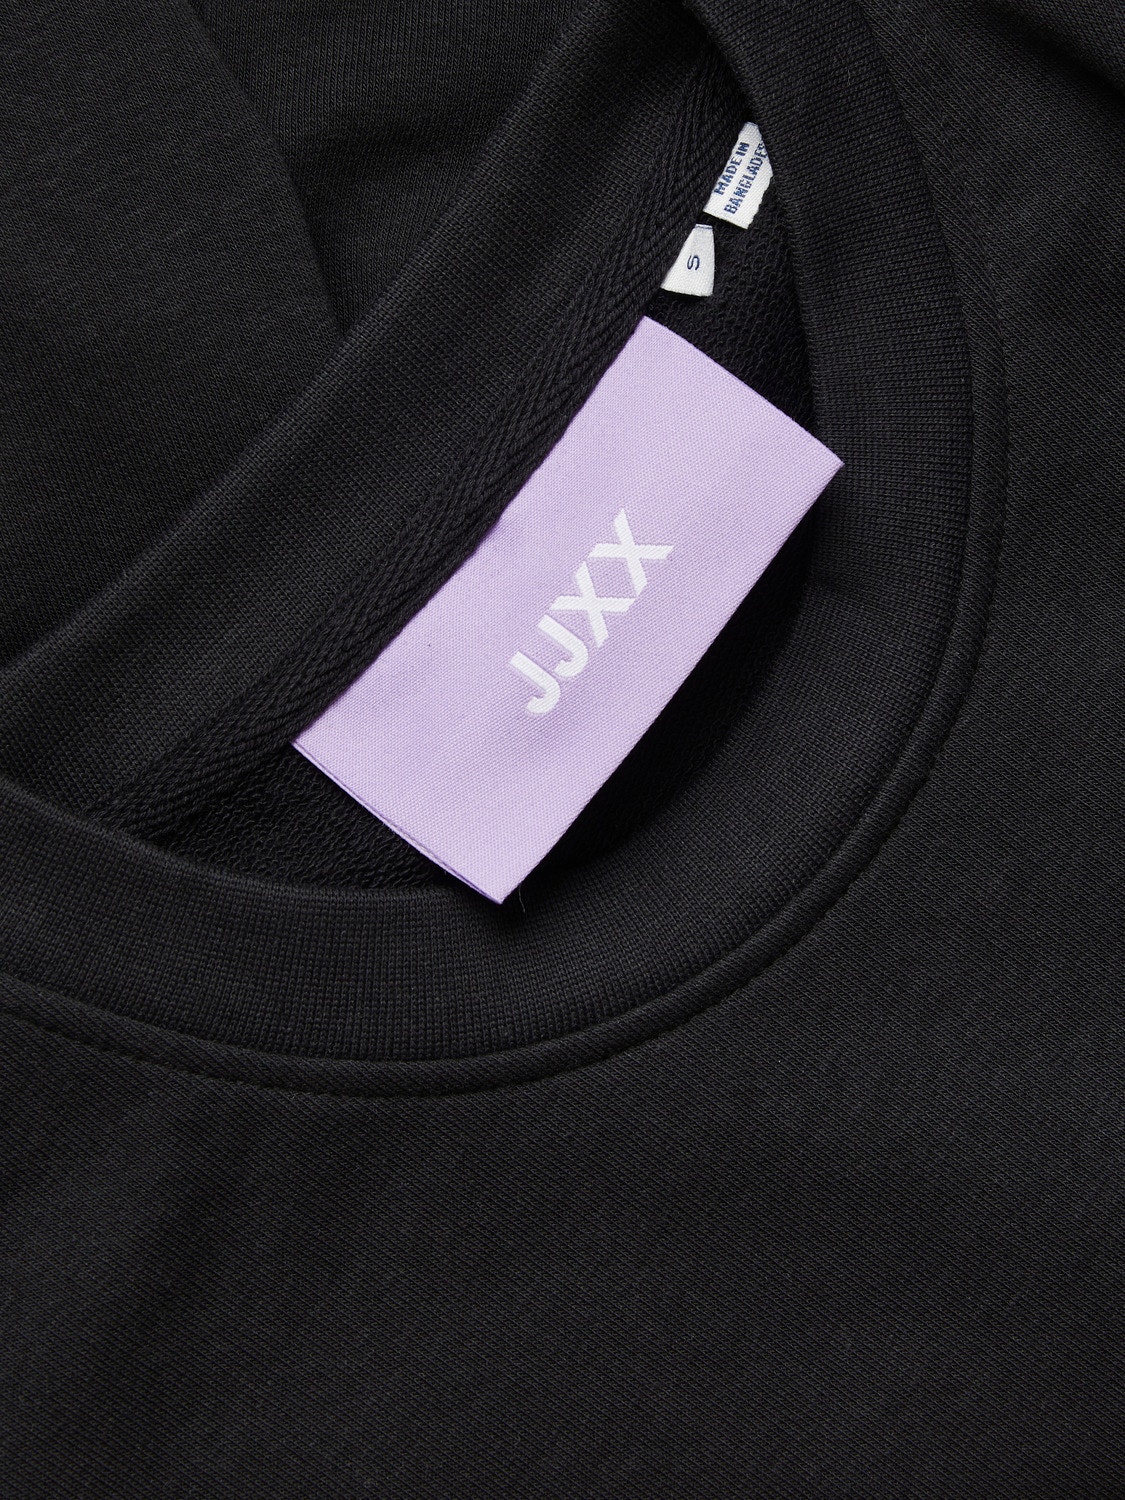 JJXX JXALFA Sweatshirt mit Rundhals -Black - 12248648